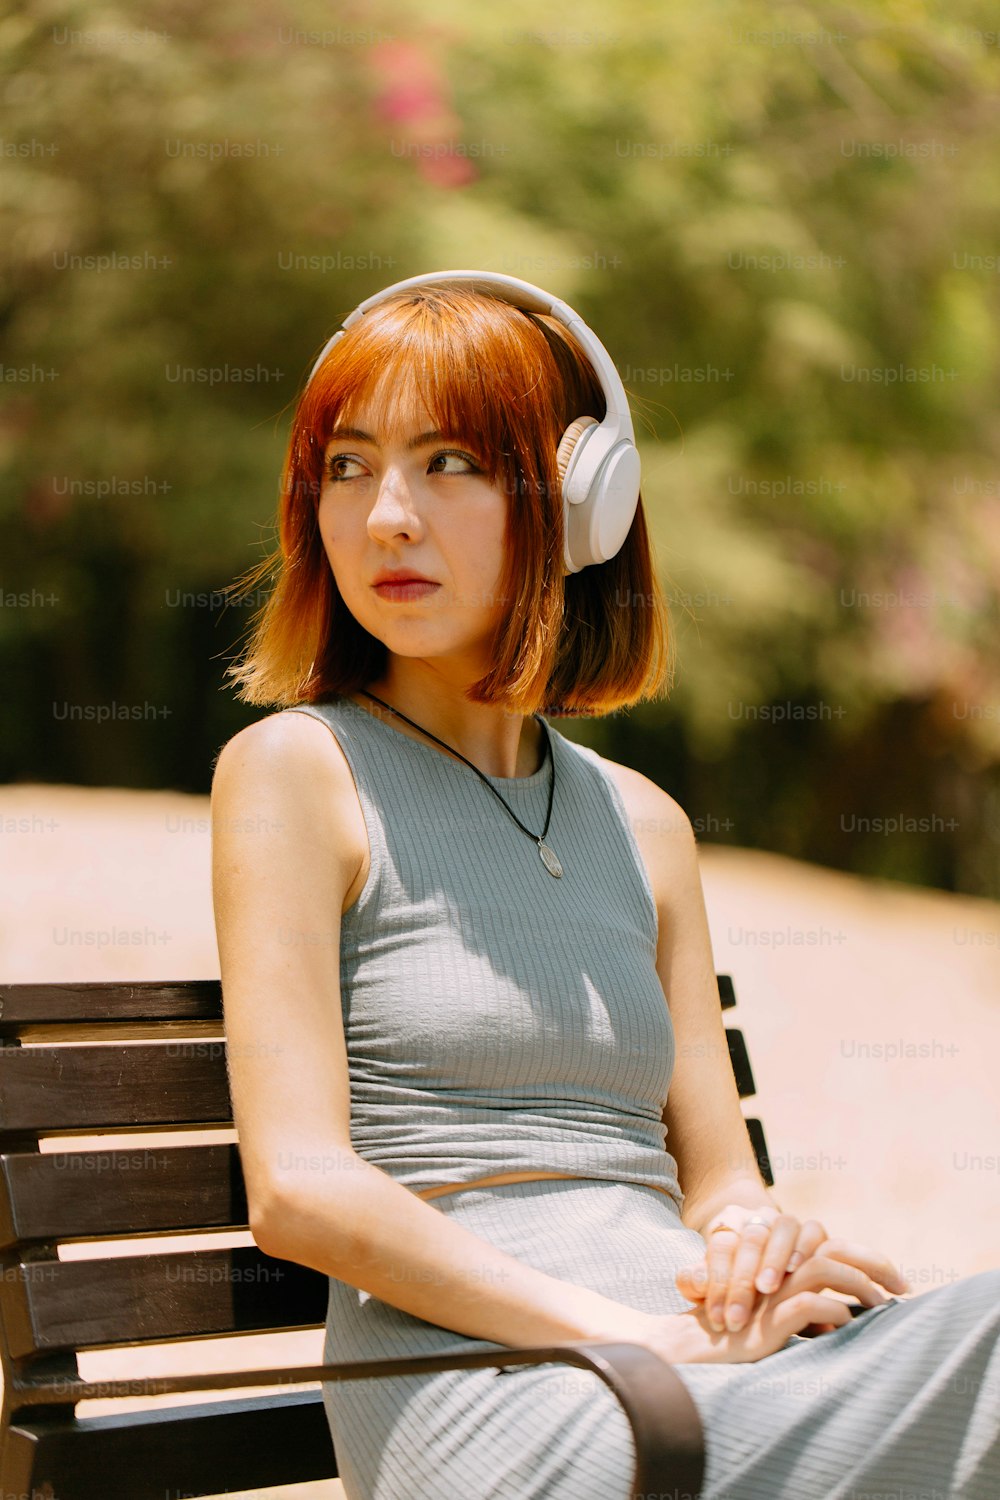 ベンチに座っているヘッドフォンを持つ女性